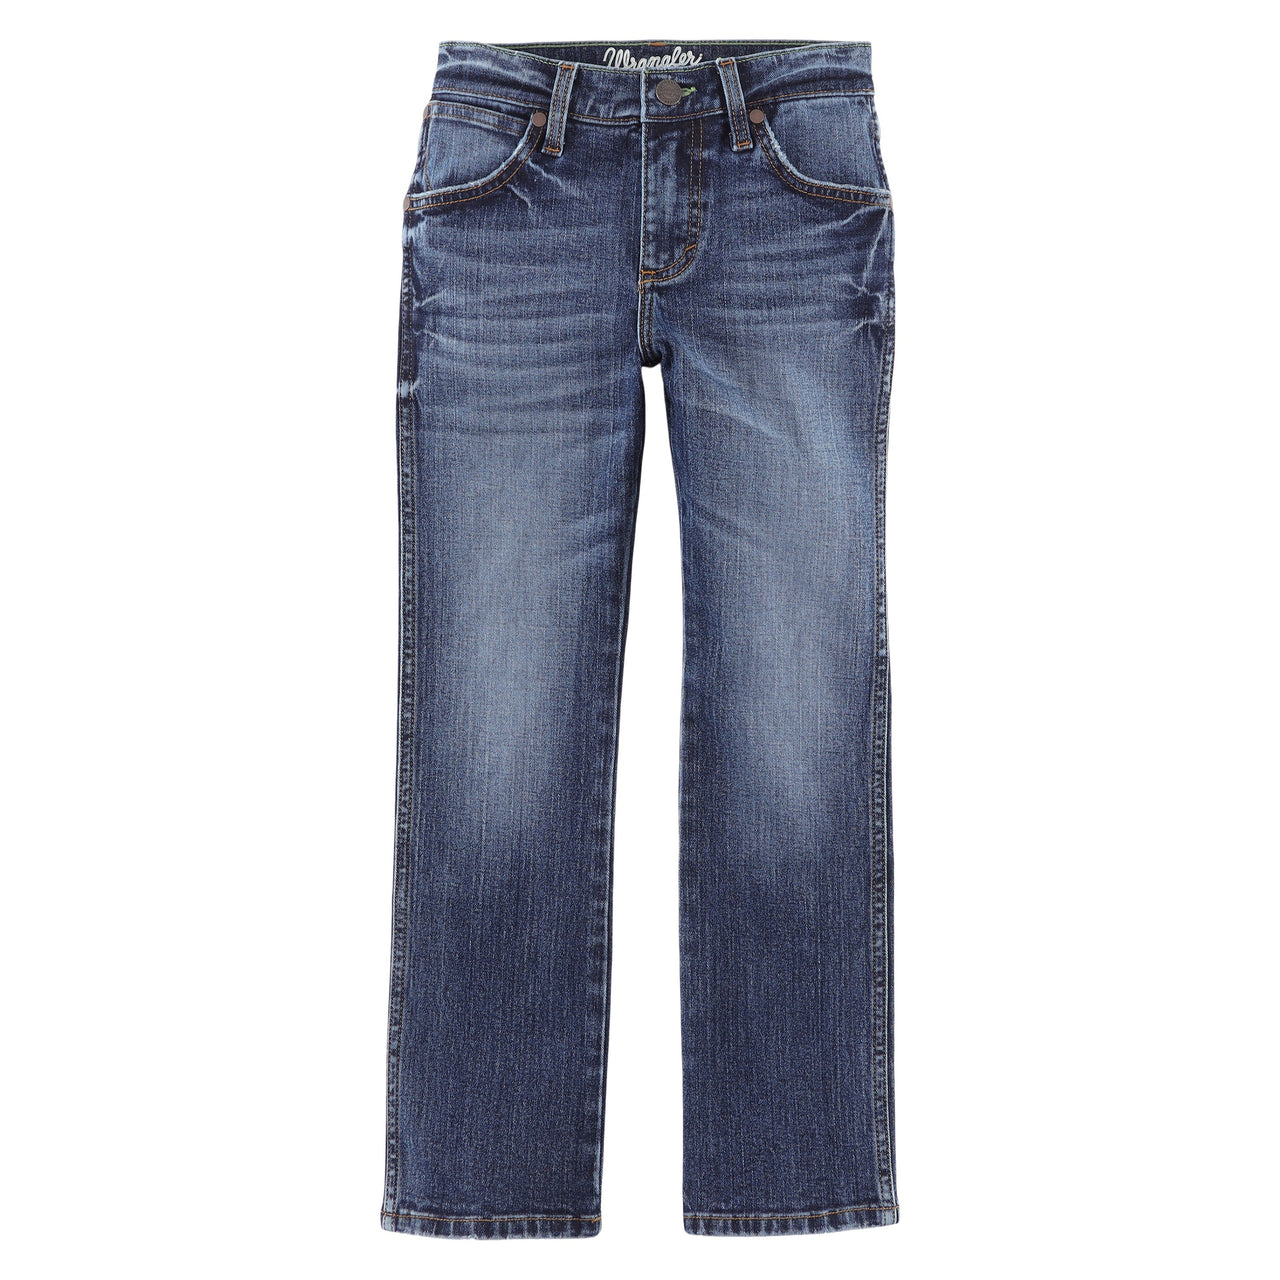 Wrangler Boy's Retro Slim Straight Jeans - Gaffrey